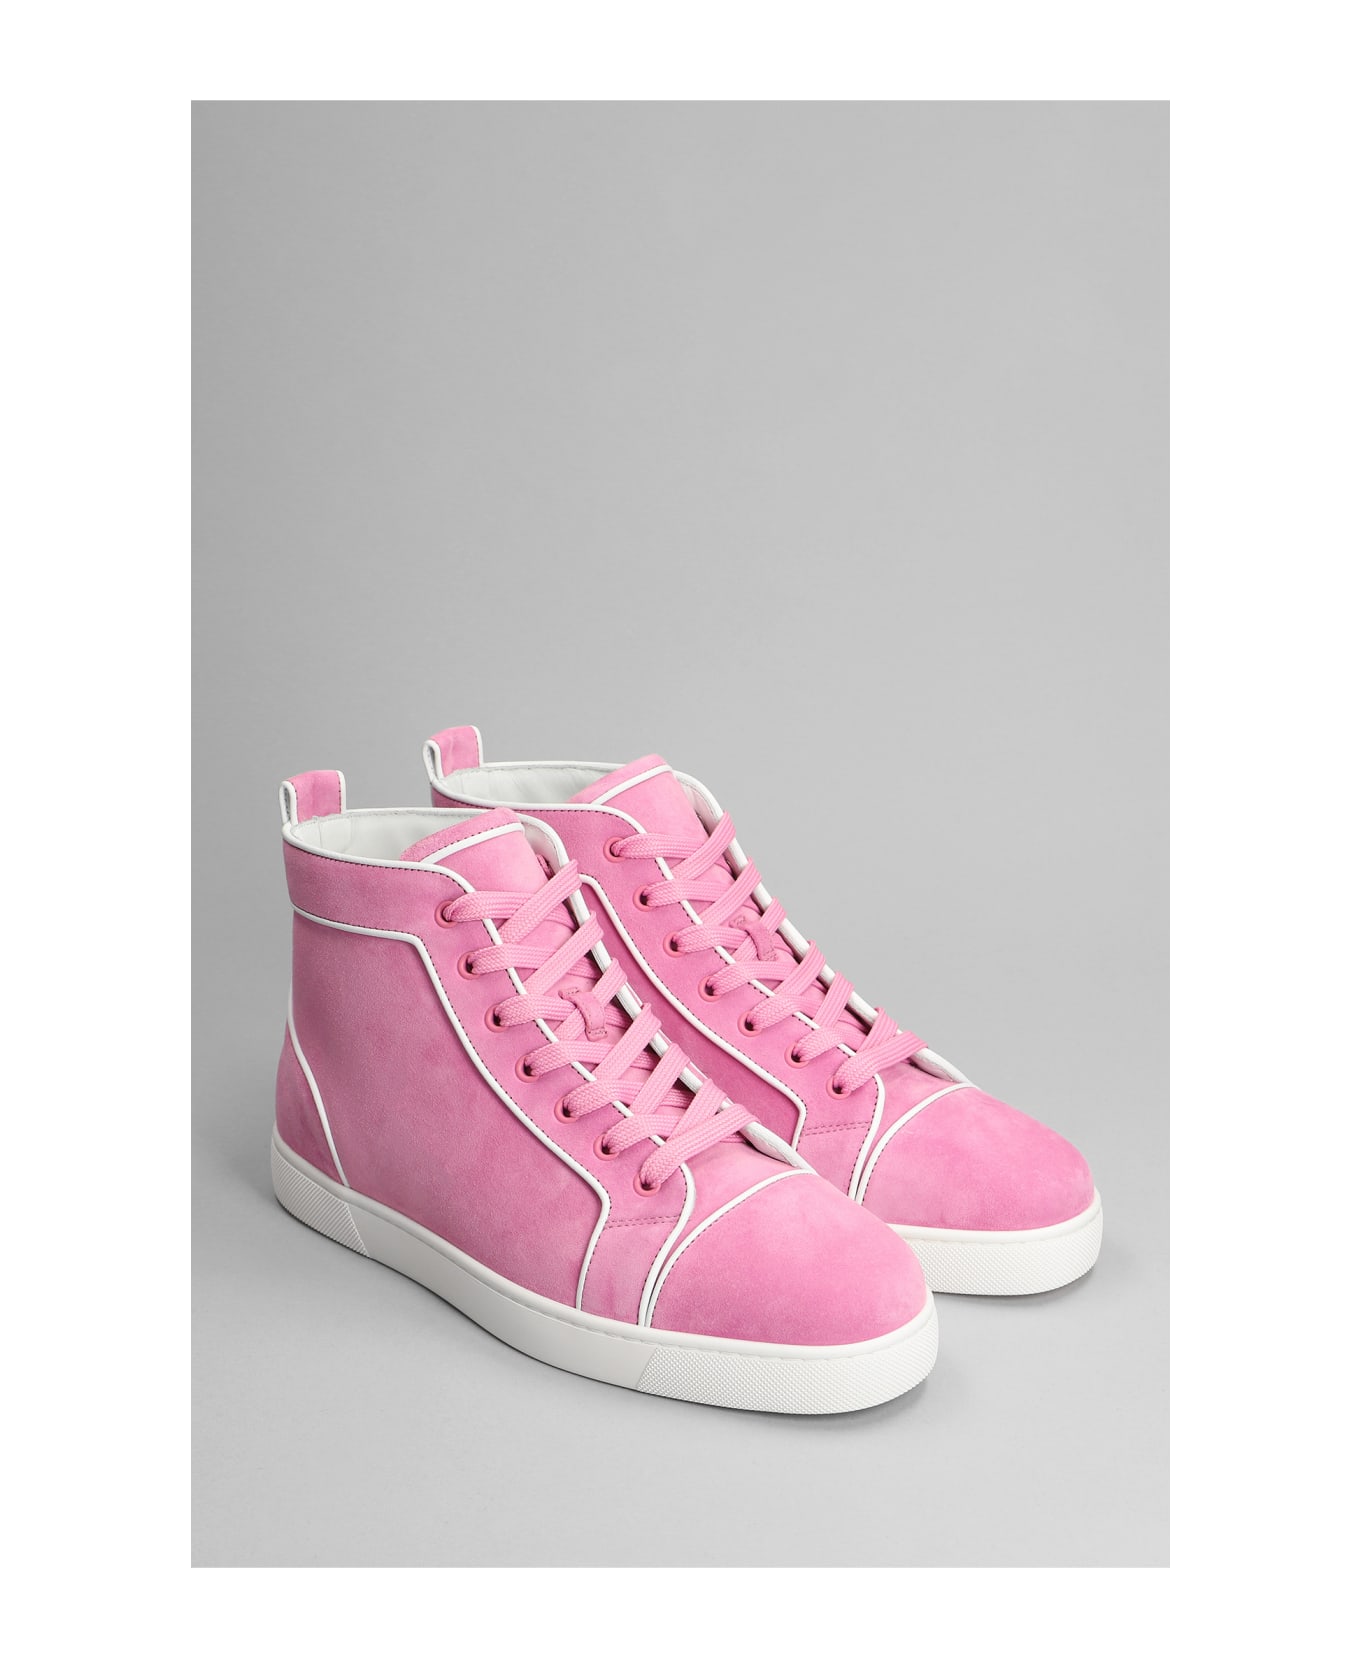 Christian Louboutin Varsilouis Flat Sneakers In Rose-pink Suede - rose-pink